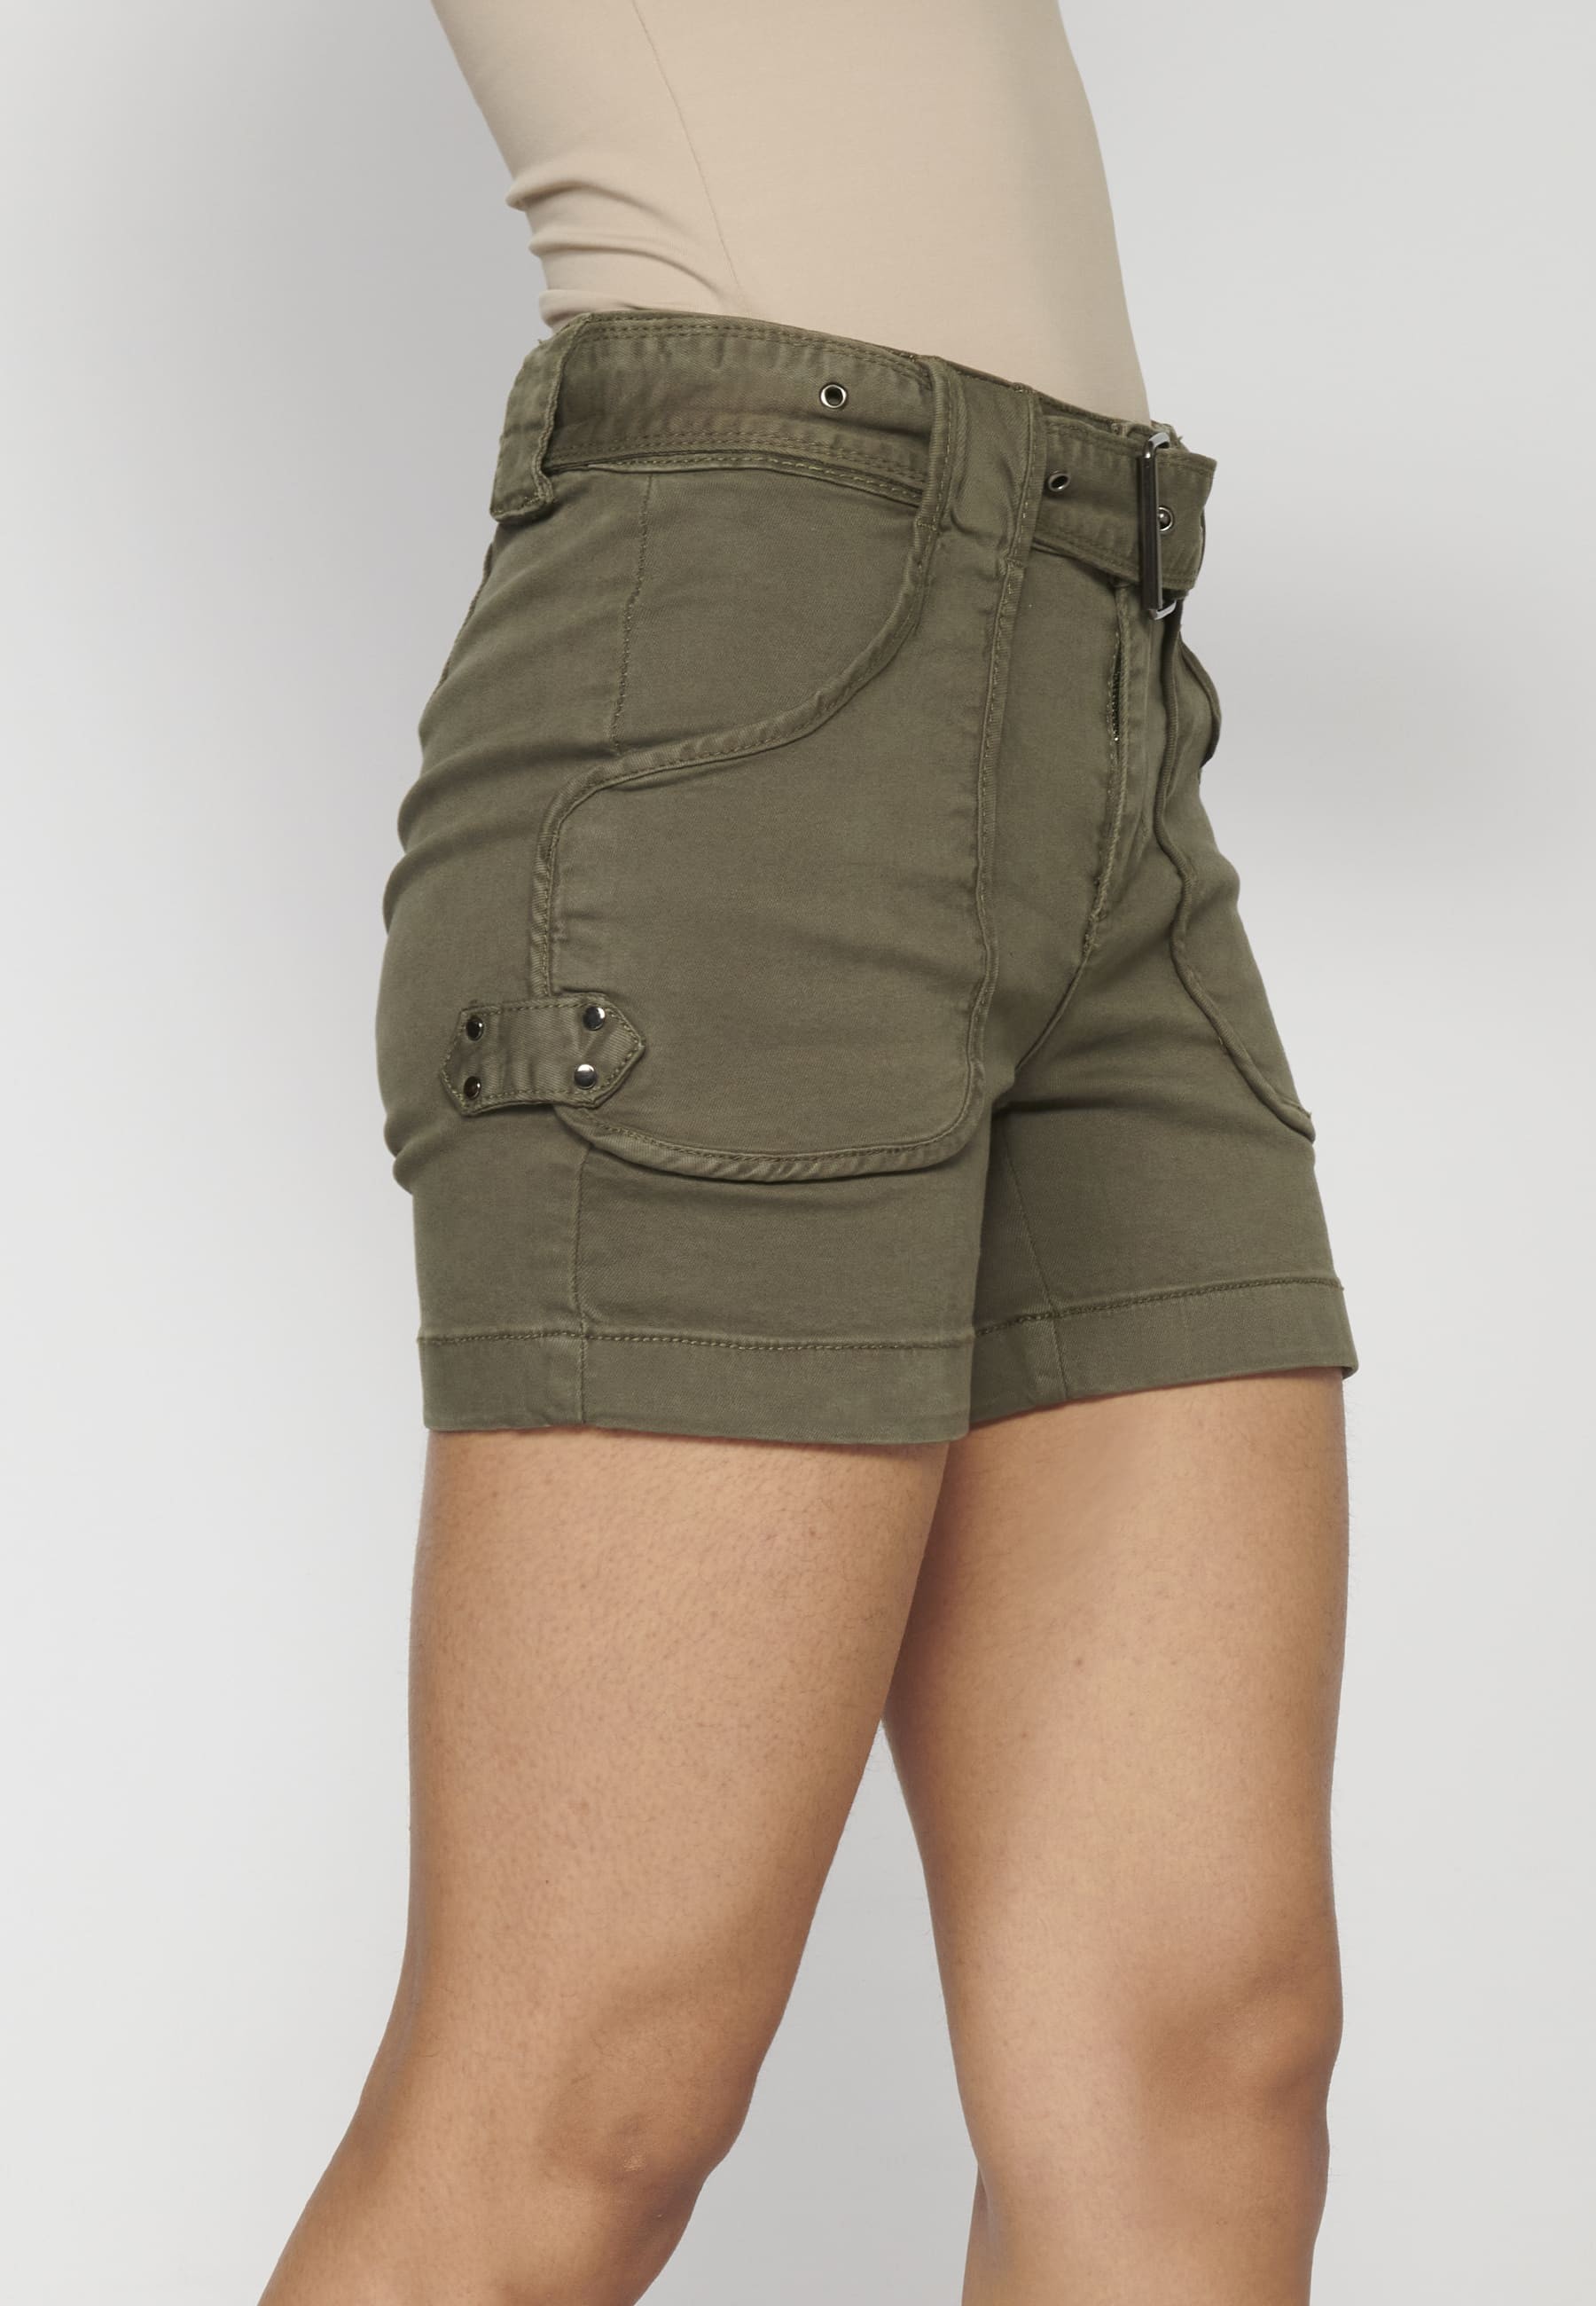 Pantalón corto short con botón y cinturón color kaki para Mujer